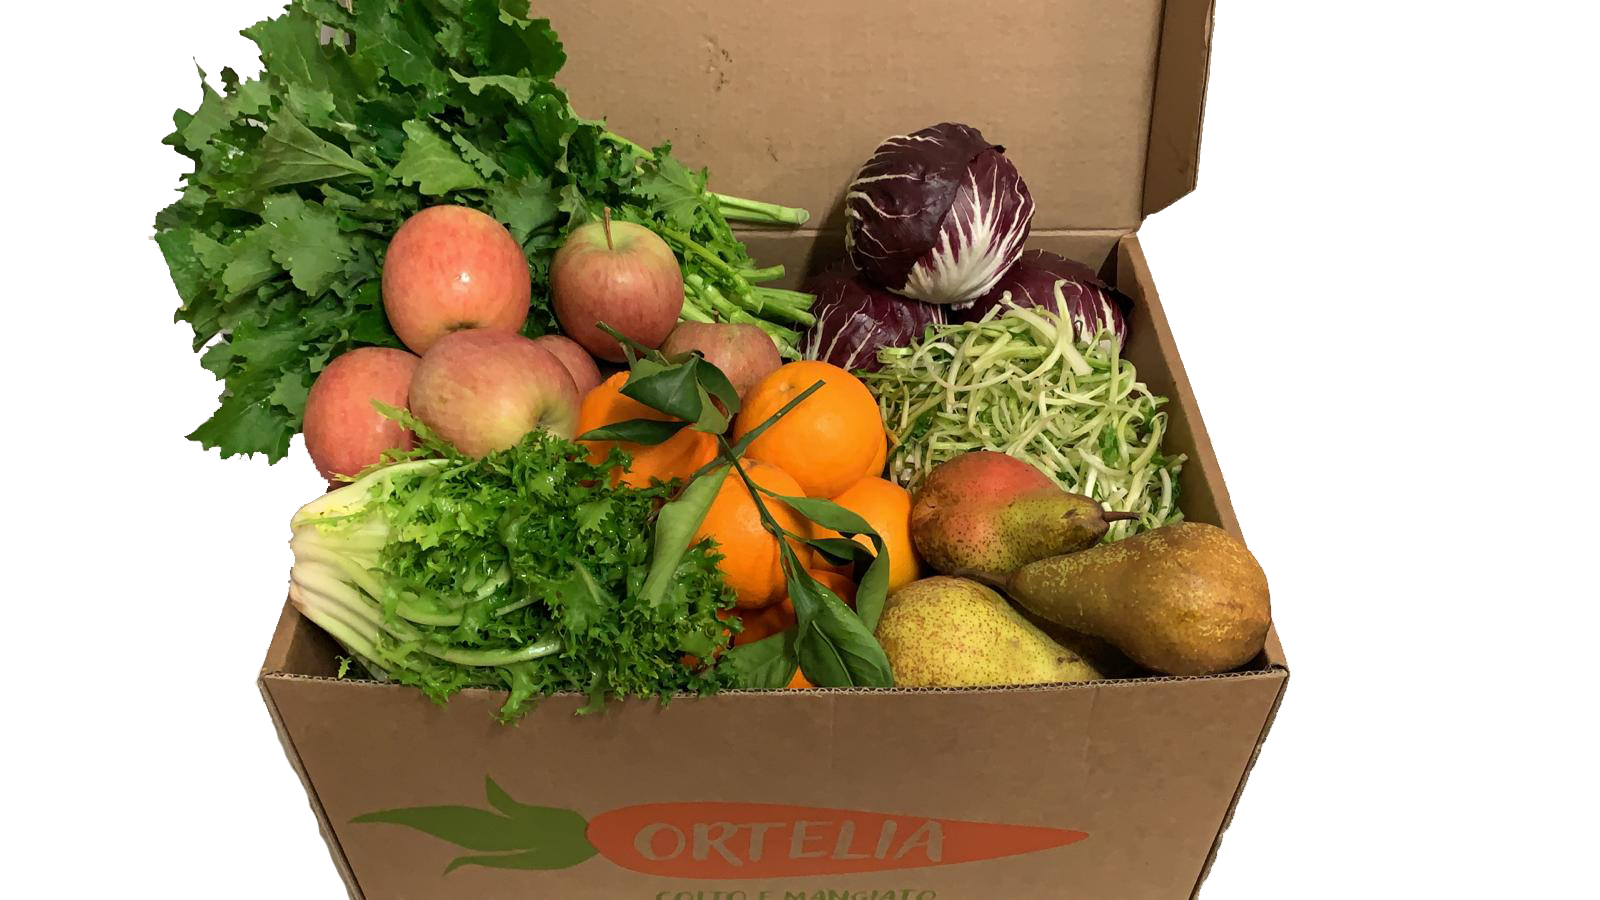 Ortelia Roma - Delivery di Frutta e Verdura a Domicilio | Box della Settimana 20/27 Gennaio 2020